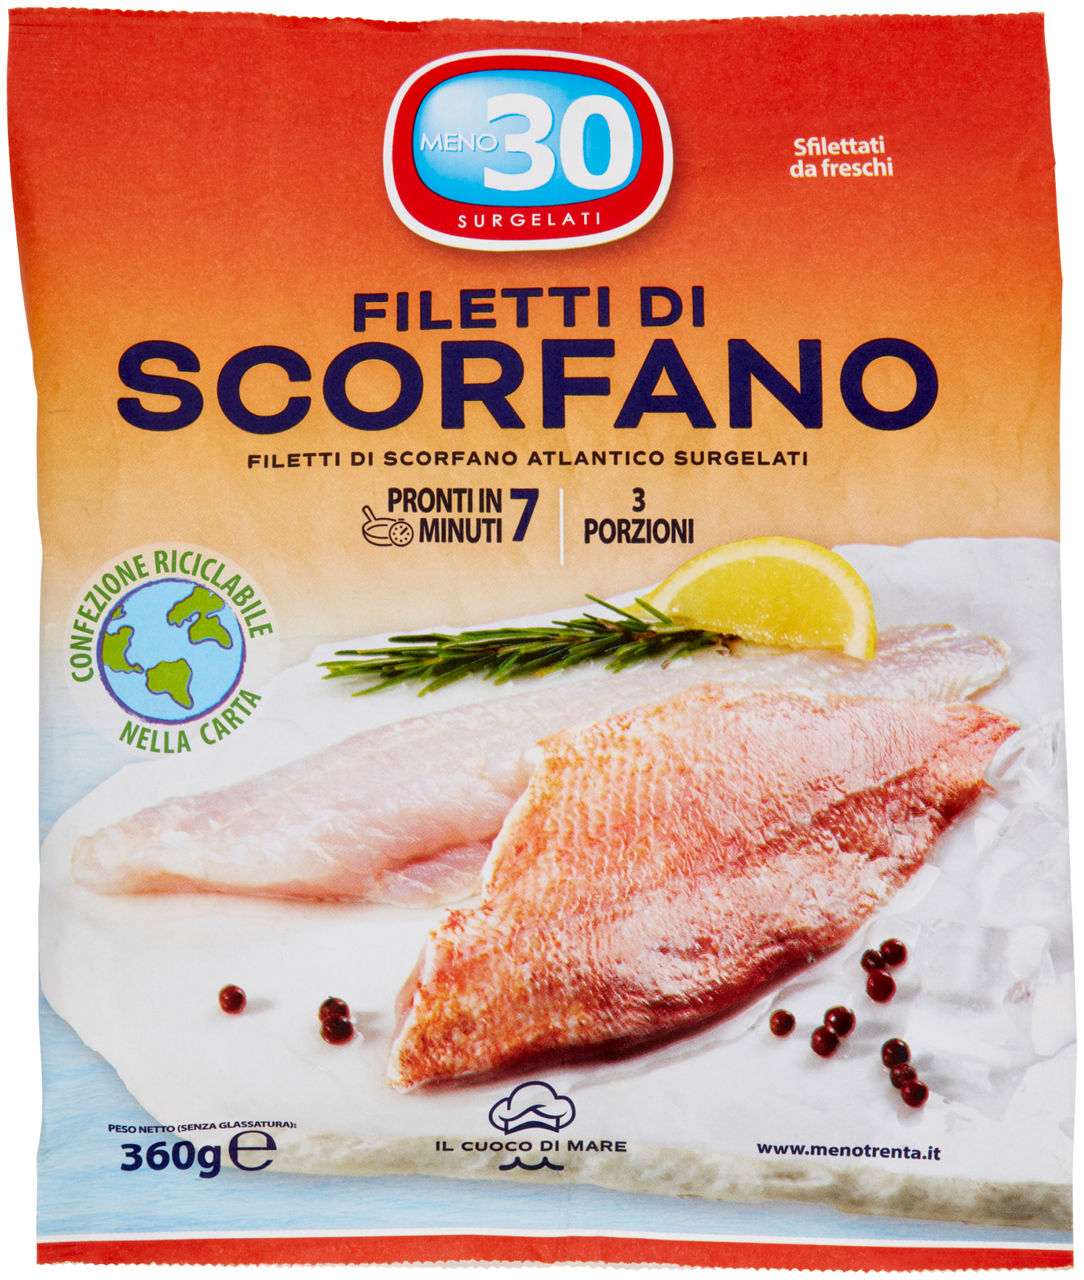 Filetti di scorfano atl. il cuoco di mare meno30 surg. g 360